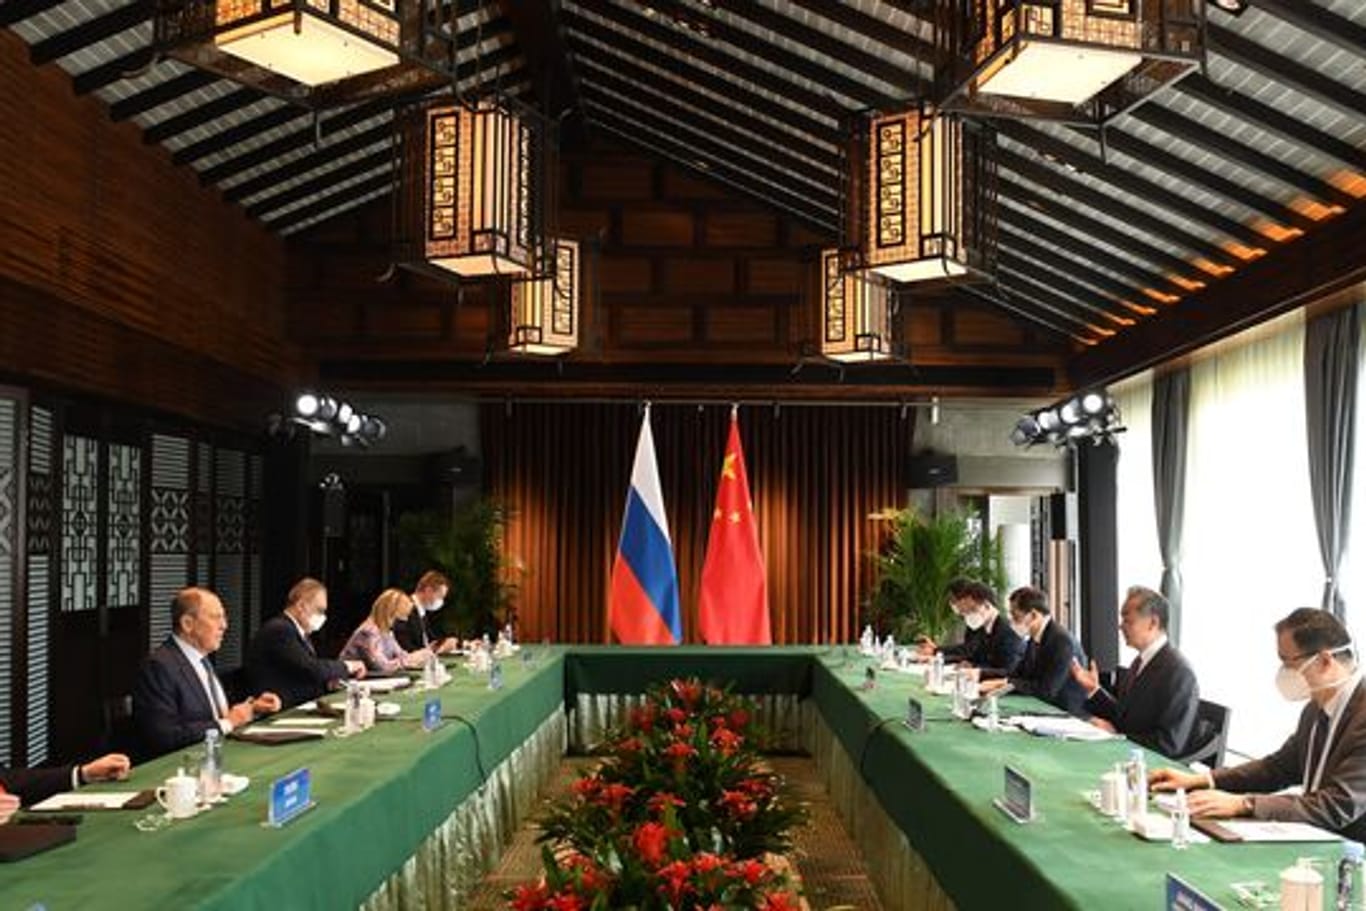 Bei einem Treffen in China vereinbarten der russische Außenminister Sergej Lawrow und sein chinesischer Kollege Wang Yi den Ausbau einer strategischen Partnerschaft in einer "schwierigen internationalen Situation".